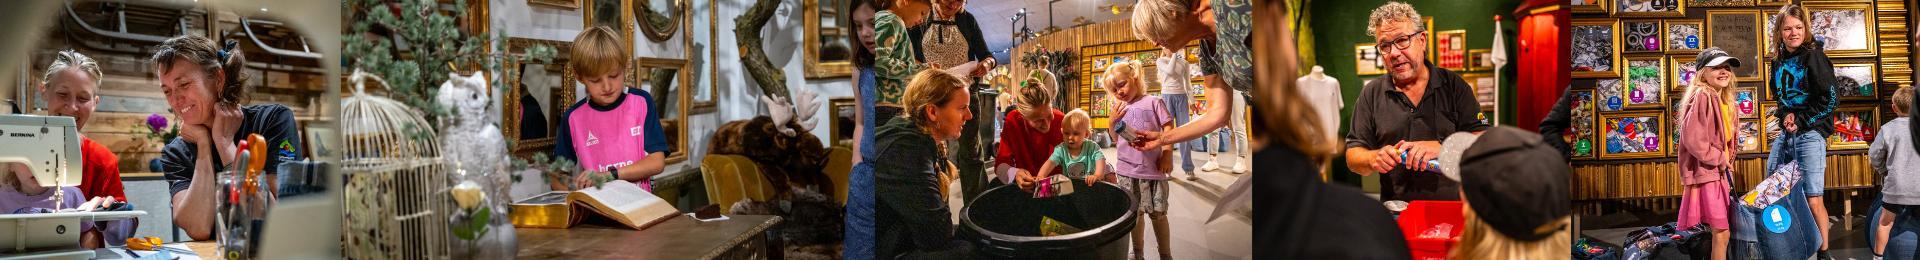 Medarbejder hos Silkeborg Forsyning viser en skoleklasse rundt på en genbrugsplads